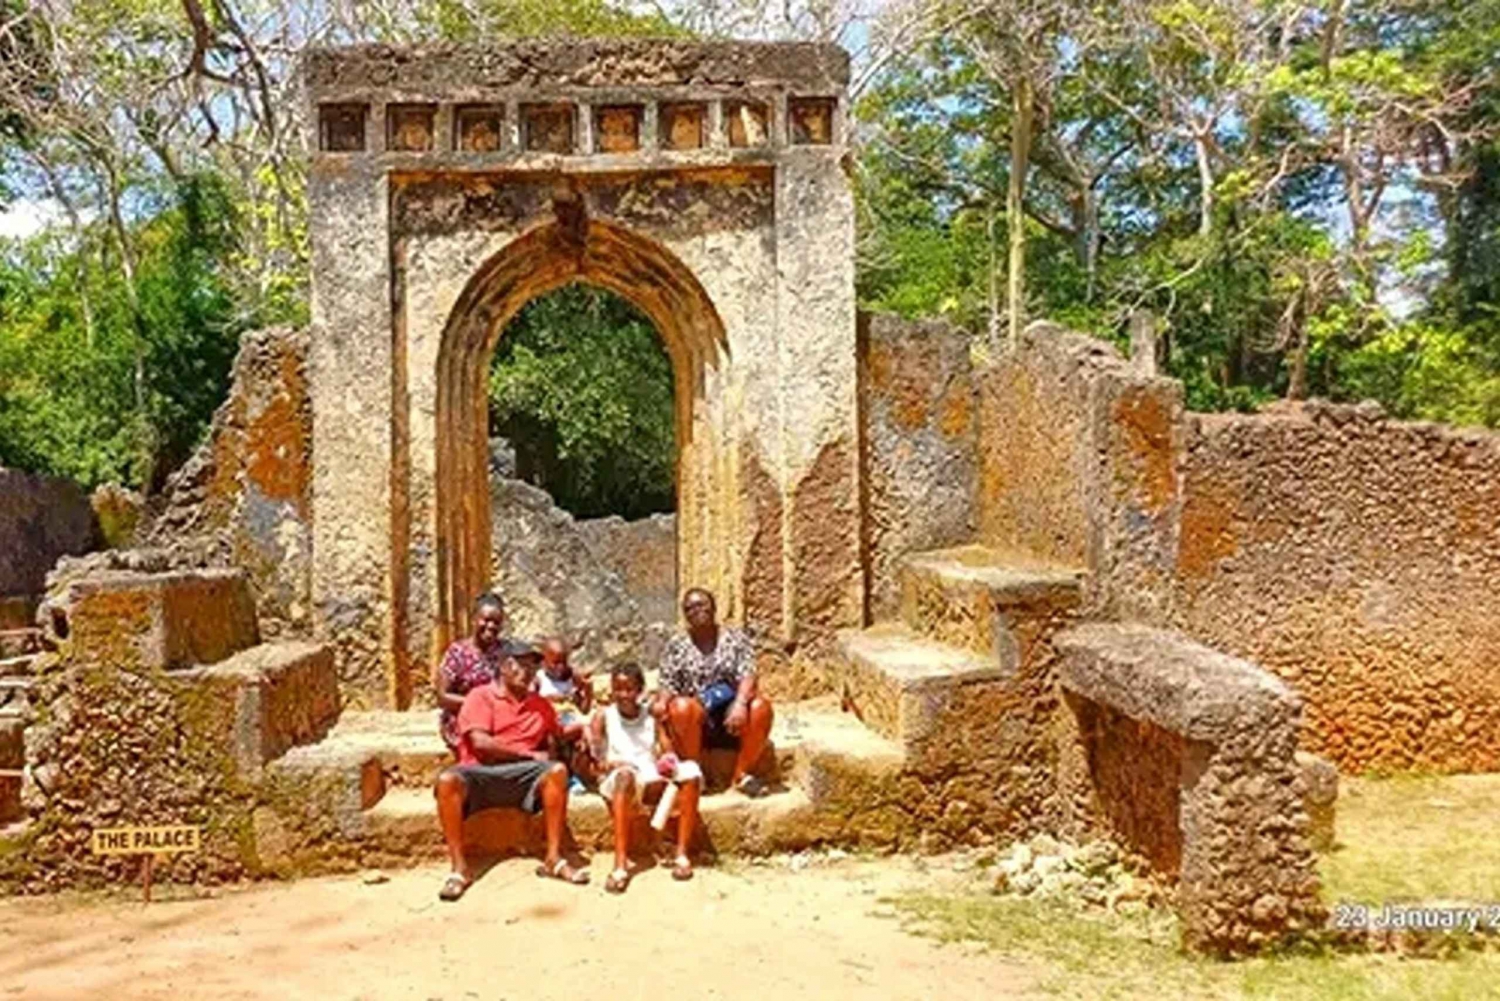 Malindi Stad: Excursie en historische halfdaagse tour.